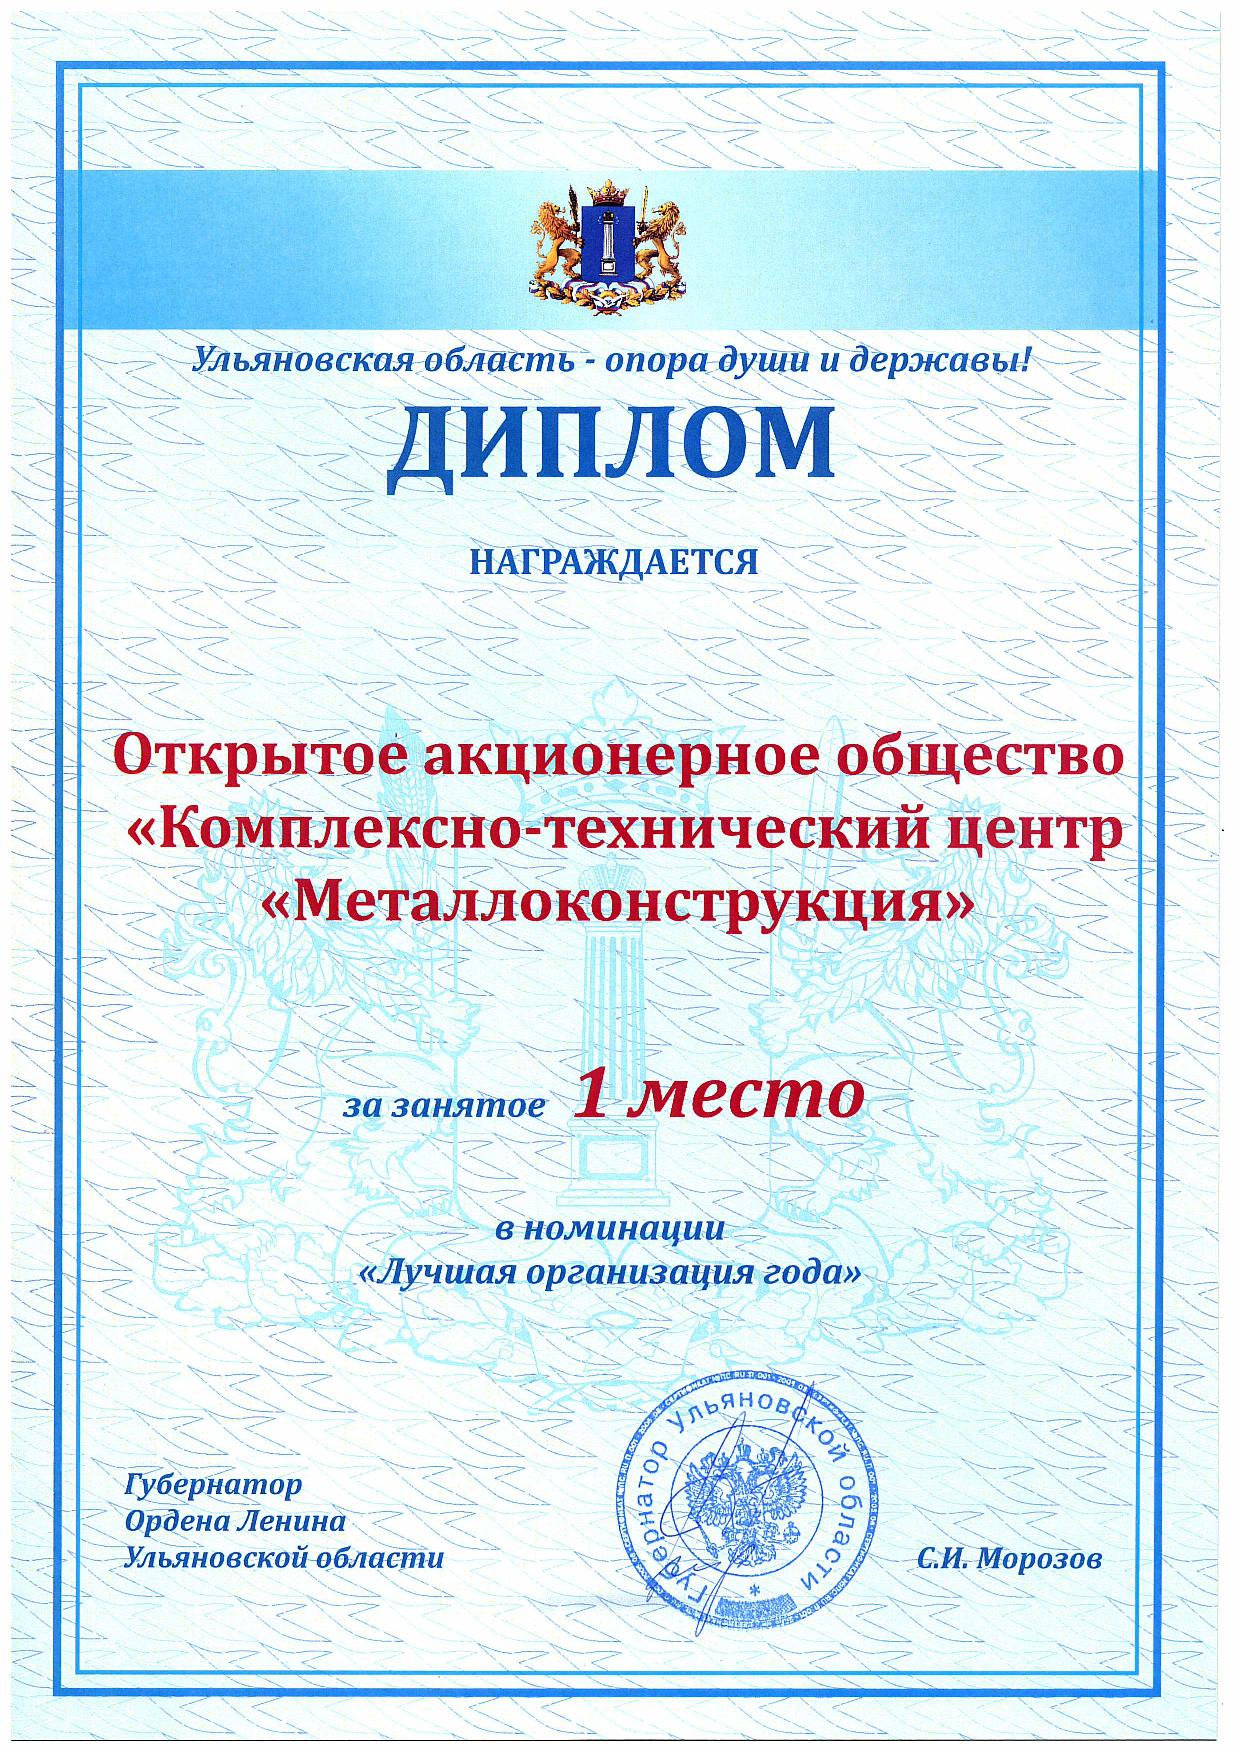 Диплом «Лучшая организация года», КТЦ Металлоконструкция